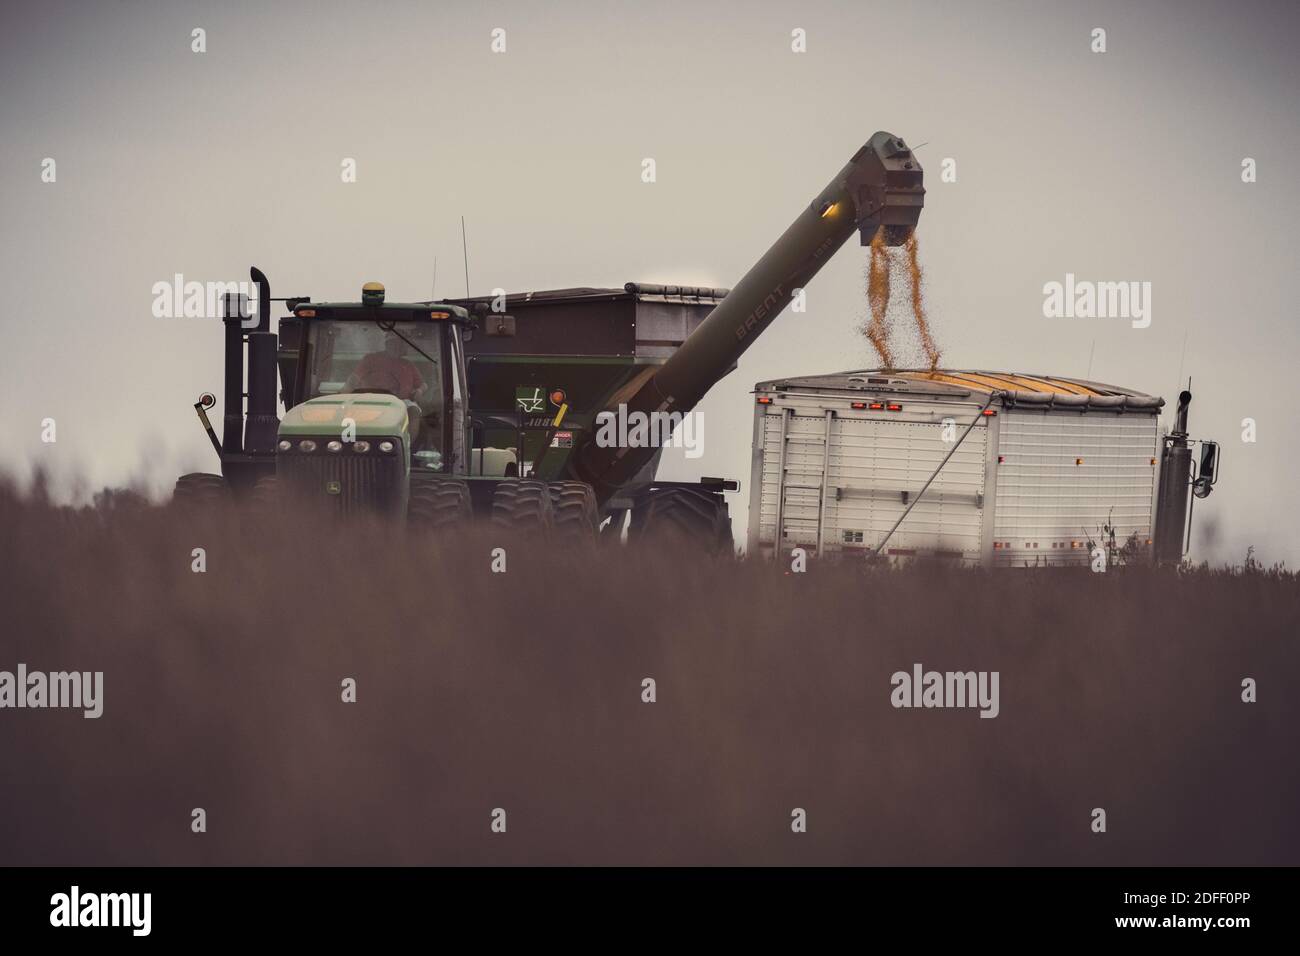 Un semi per il trasporto della granella viene caricato da un trattore John Deere e da un carro a gravità nella contea di Jackson, Indiana. La scena è parzialmente oscura dalla soia. Foto Stock